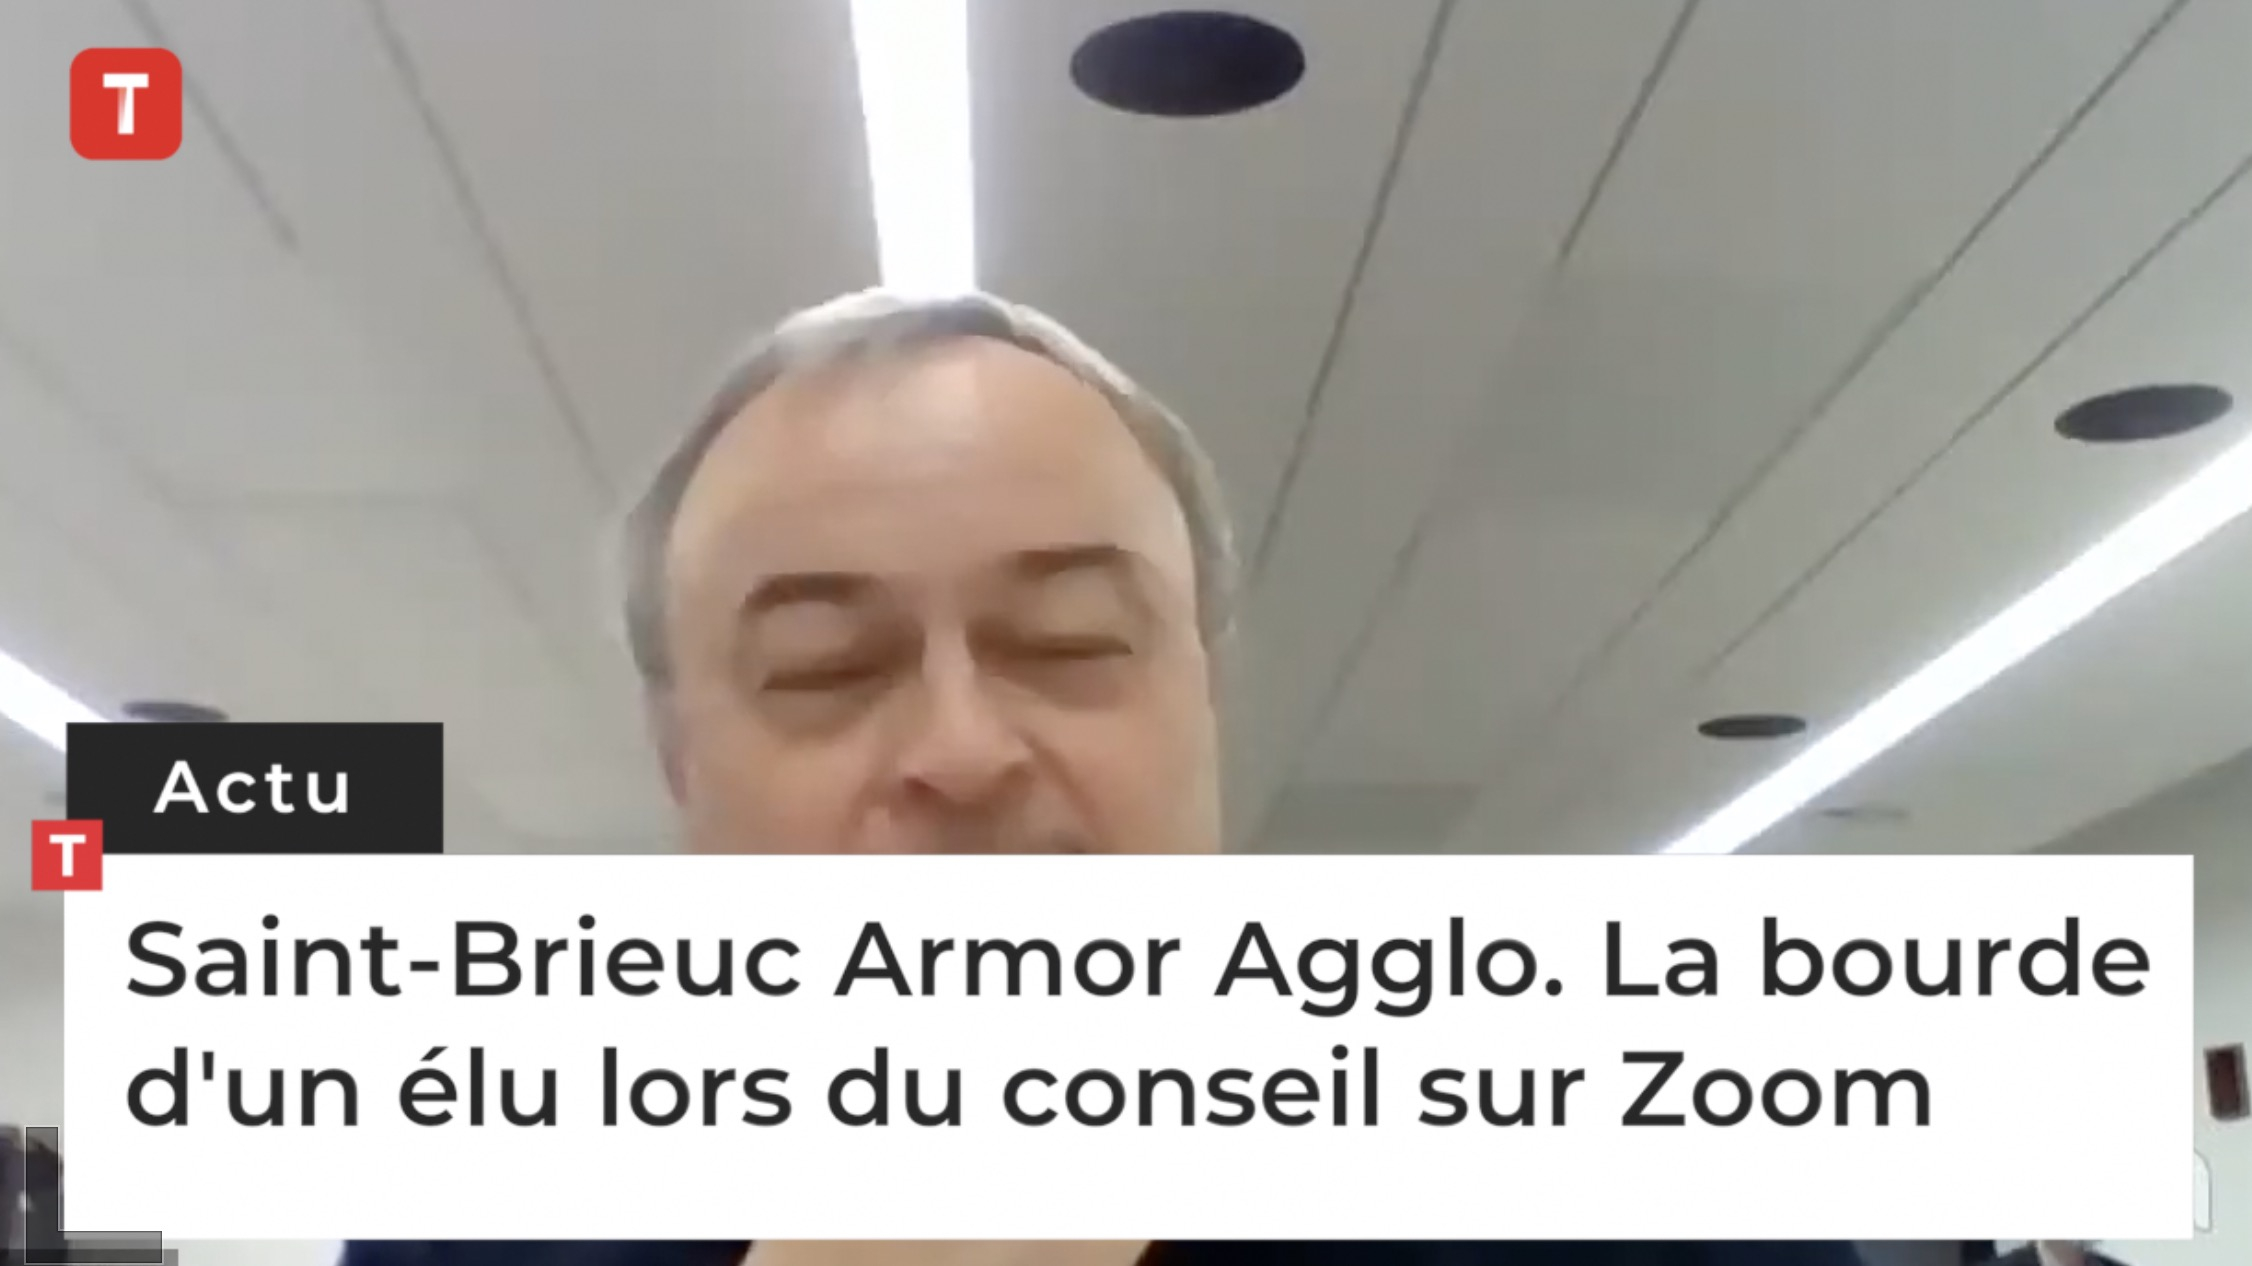 Saint-Brieuc Armor Agglo. La bourde d'un élu lors du conseil sur Zoom (Le Télégramme)